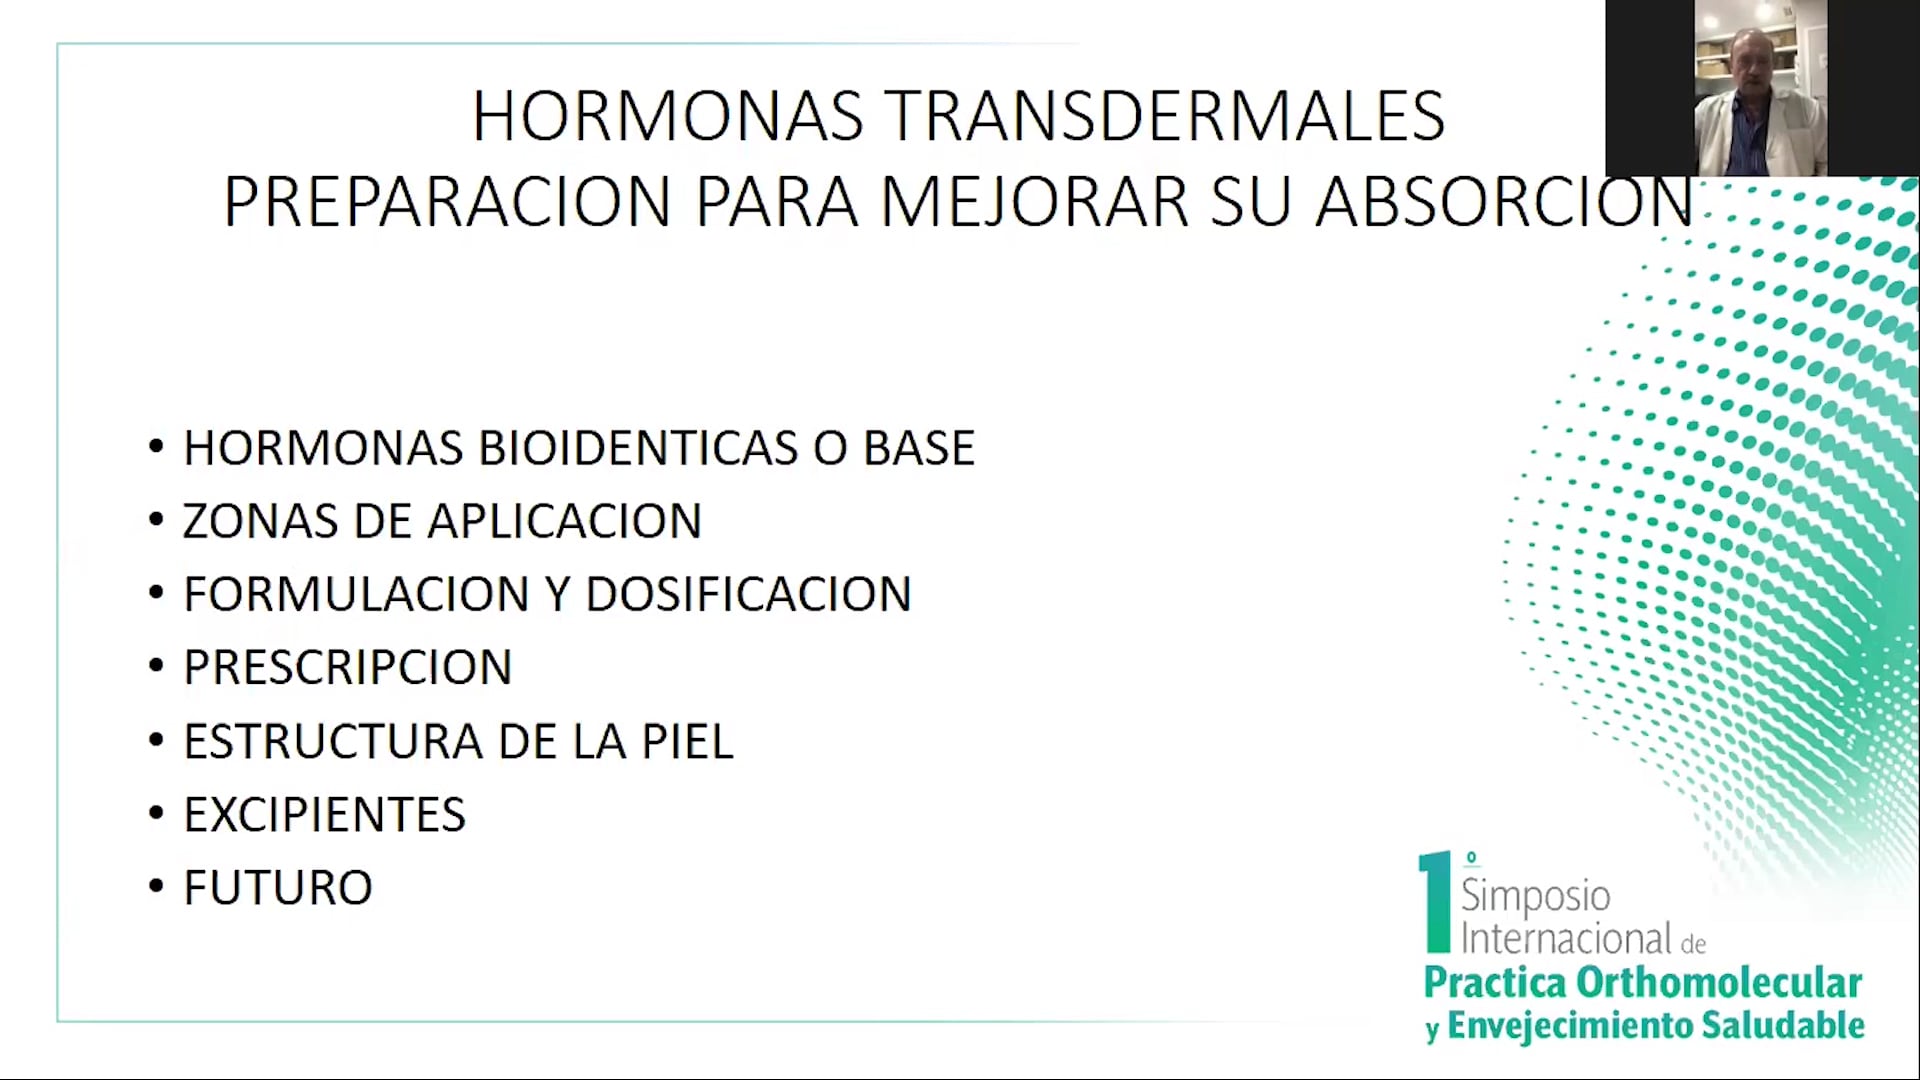 Hormonas transdérmicas como preparar para mejorar el nivel de absorción.